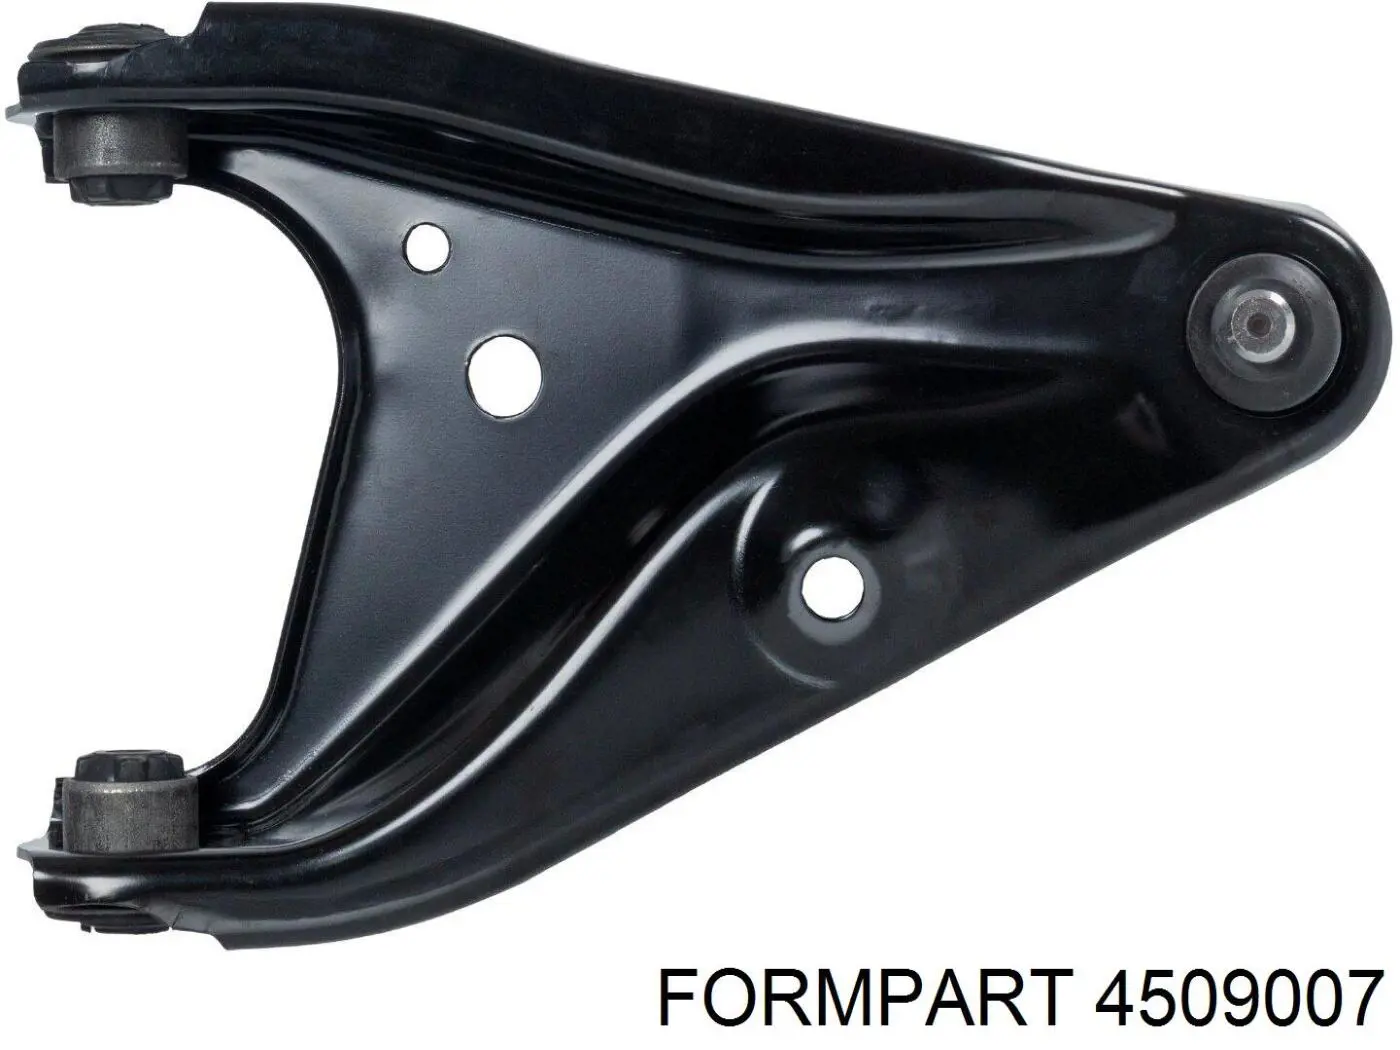 4509007 Formpart/Otoform braço oscilante inferior direito de suspensão dianteira